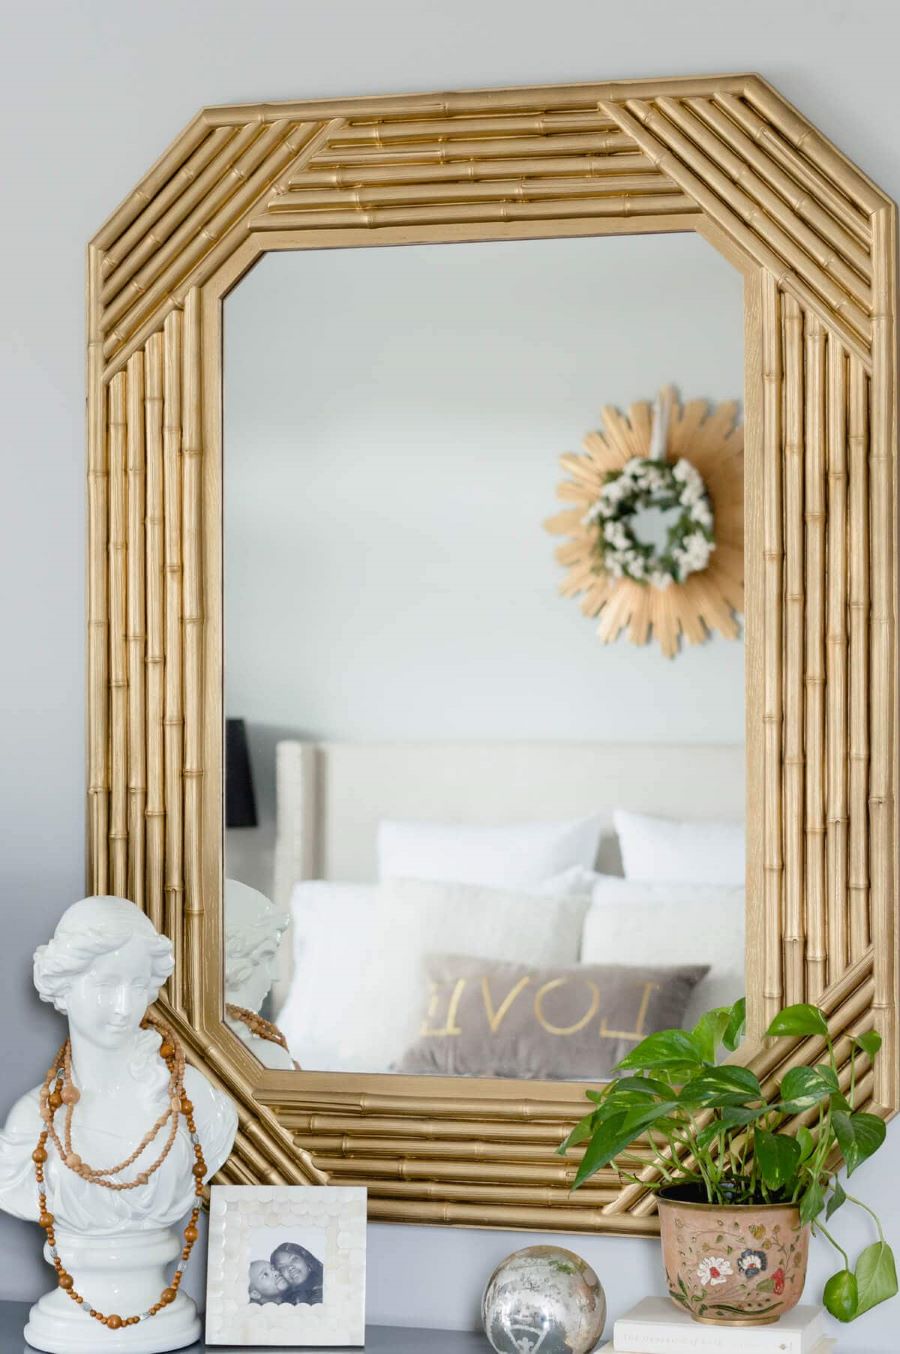 Espejo con marco de bambú, pintado de color dorado. Está sobre una repisa con un busto blanco, con un collar de madera, un pequeño marco de foto y un macetero pintado con flores. En el espejo se ve reflejada una cama blanca, con un cojín que dice "love".